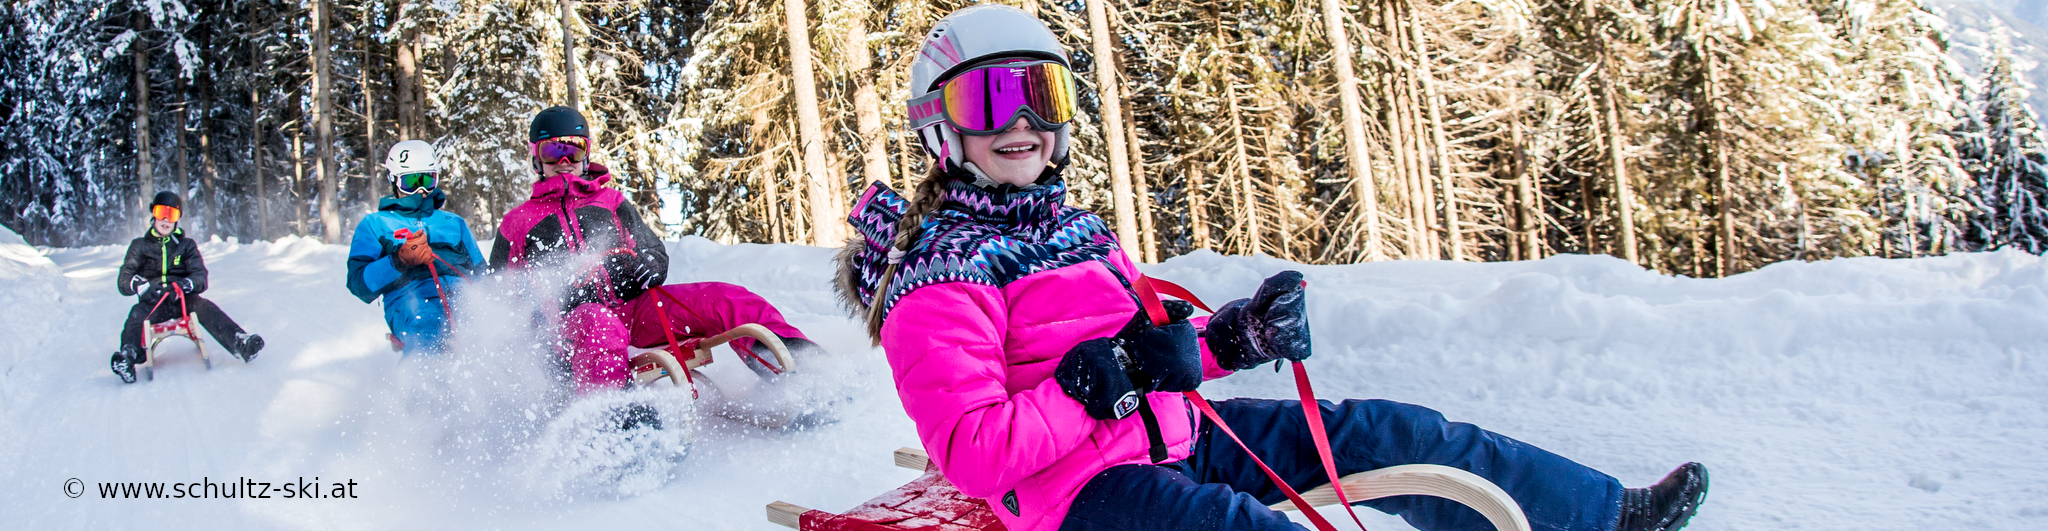 ZILLERTAL – verlängertes Skiwochenende mit 4 Skitagen – in den Weihnachtsferien – Hotel in Strass – ab Donnerstag früh 